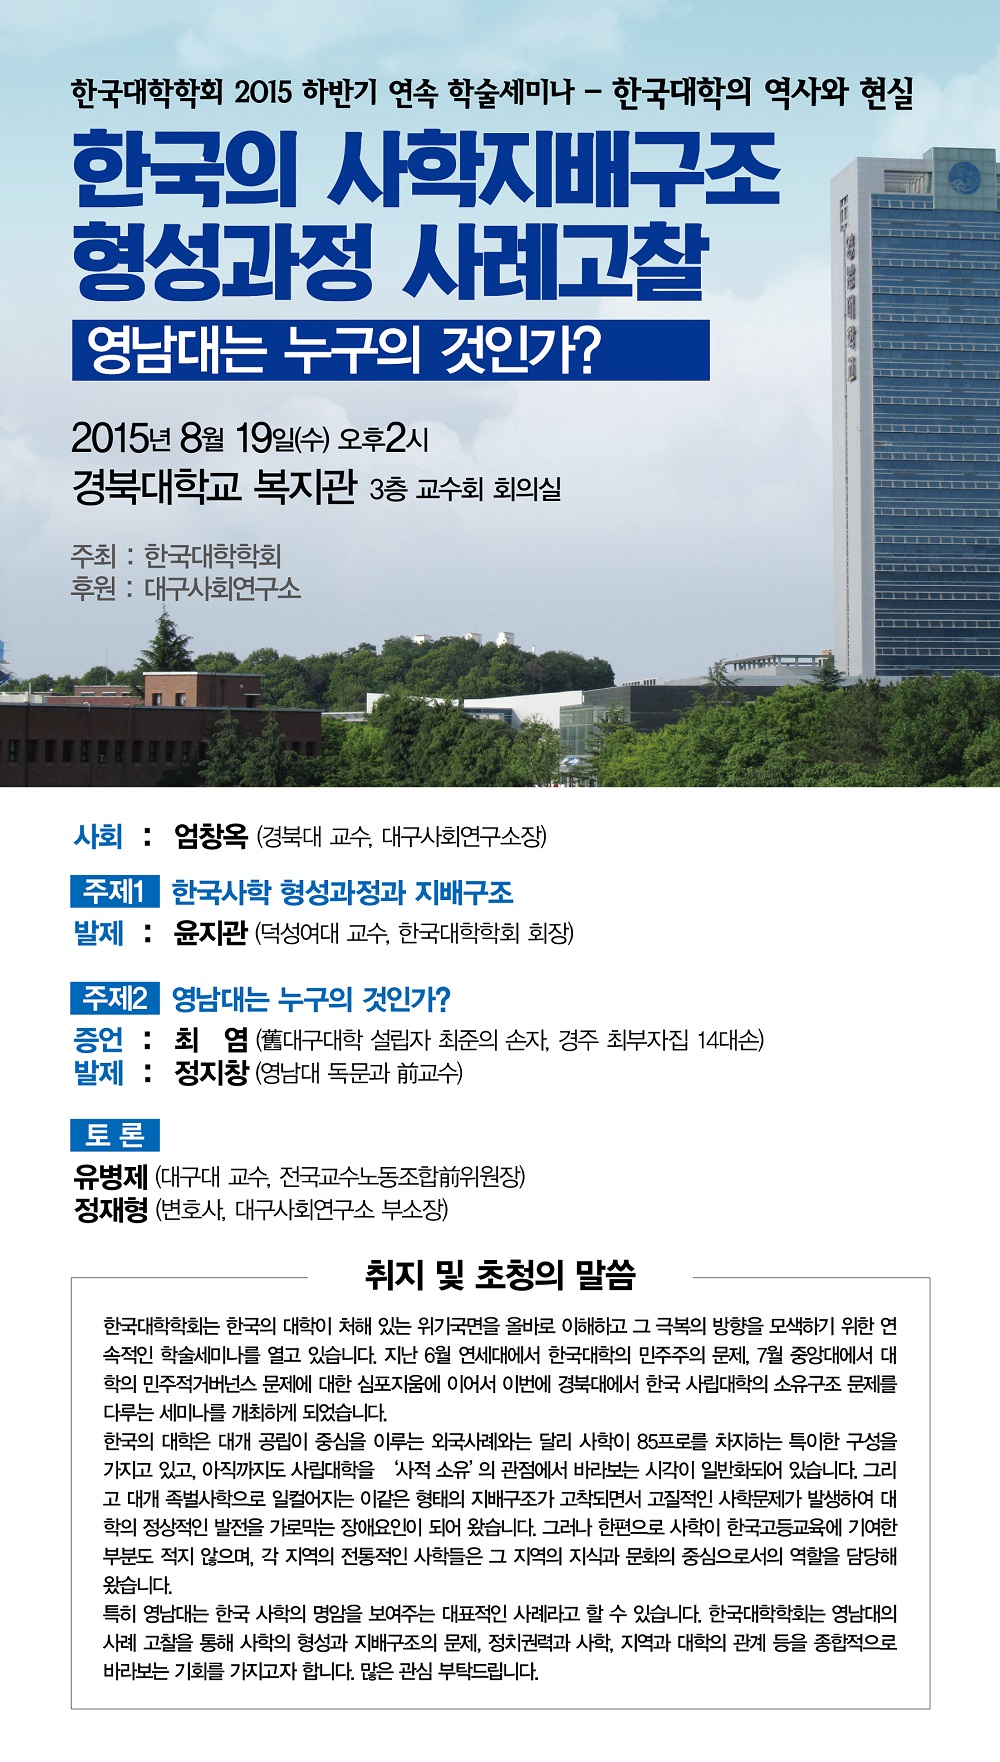 2015-08-19한국대학학회웹자보.jpg